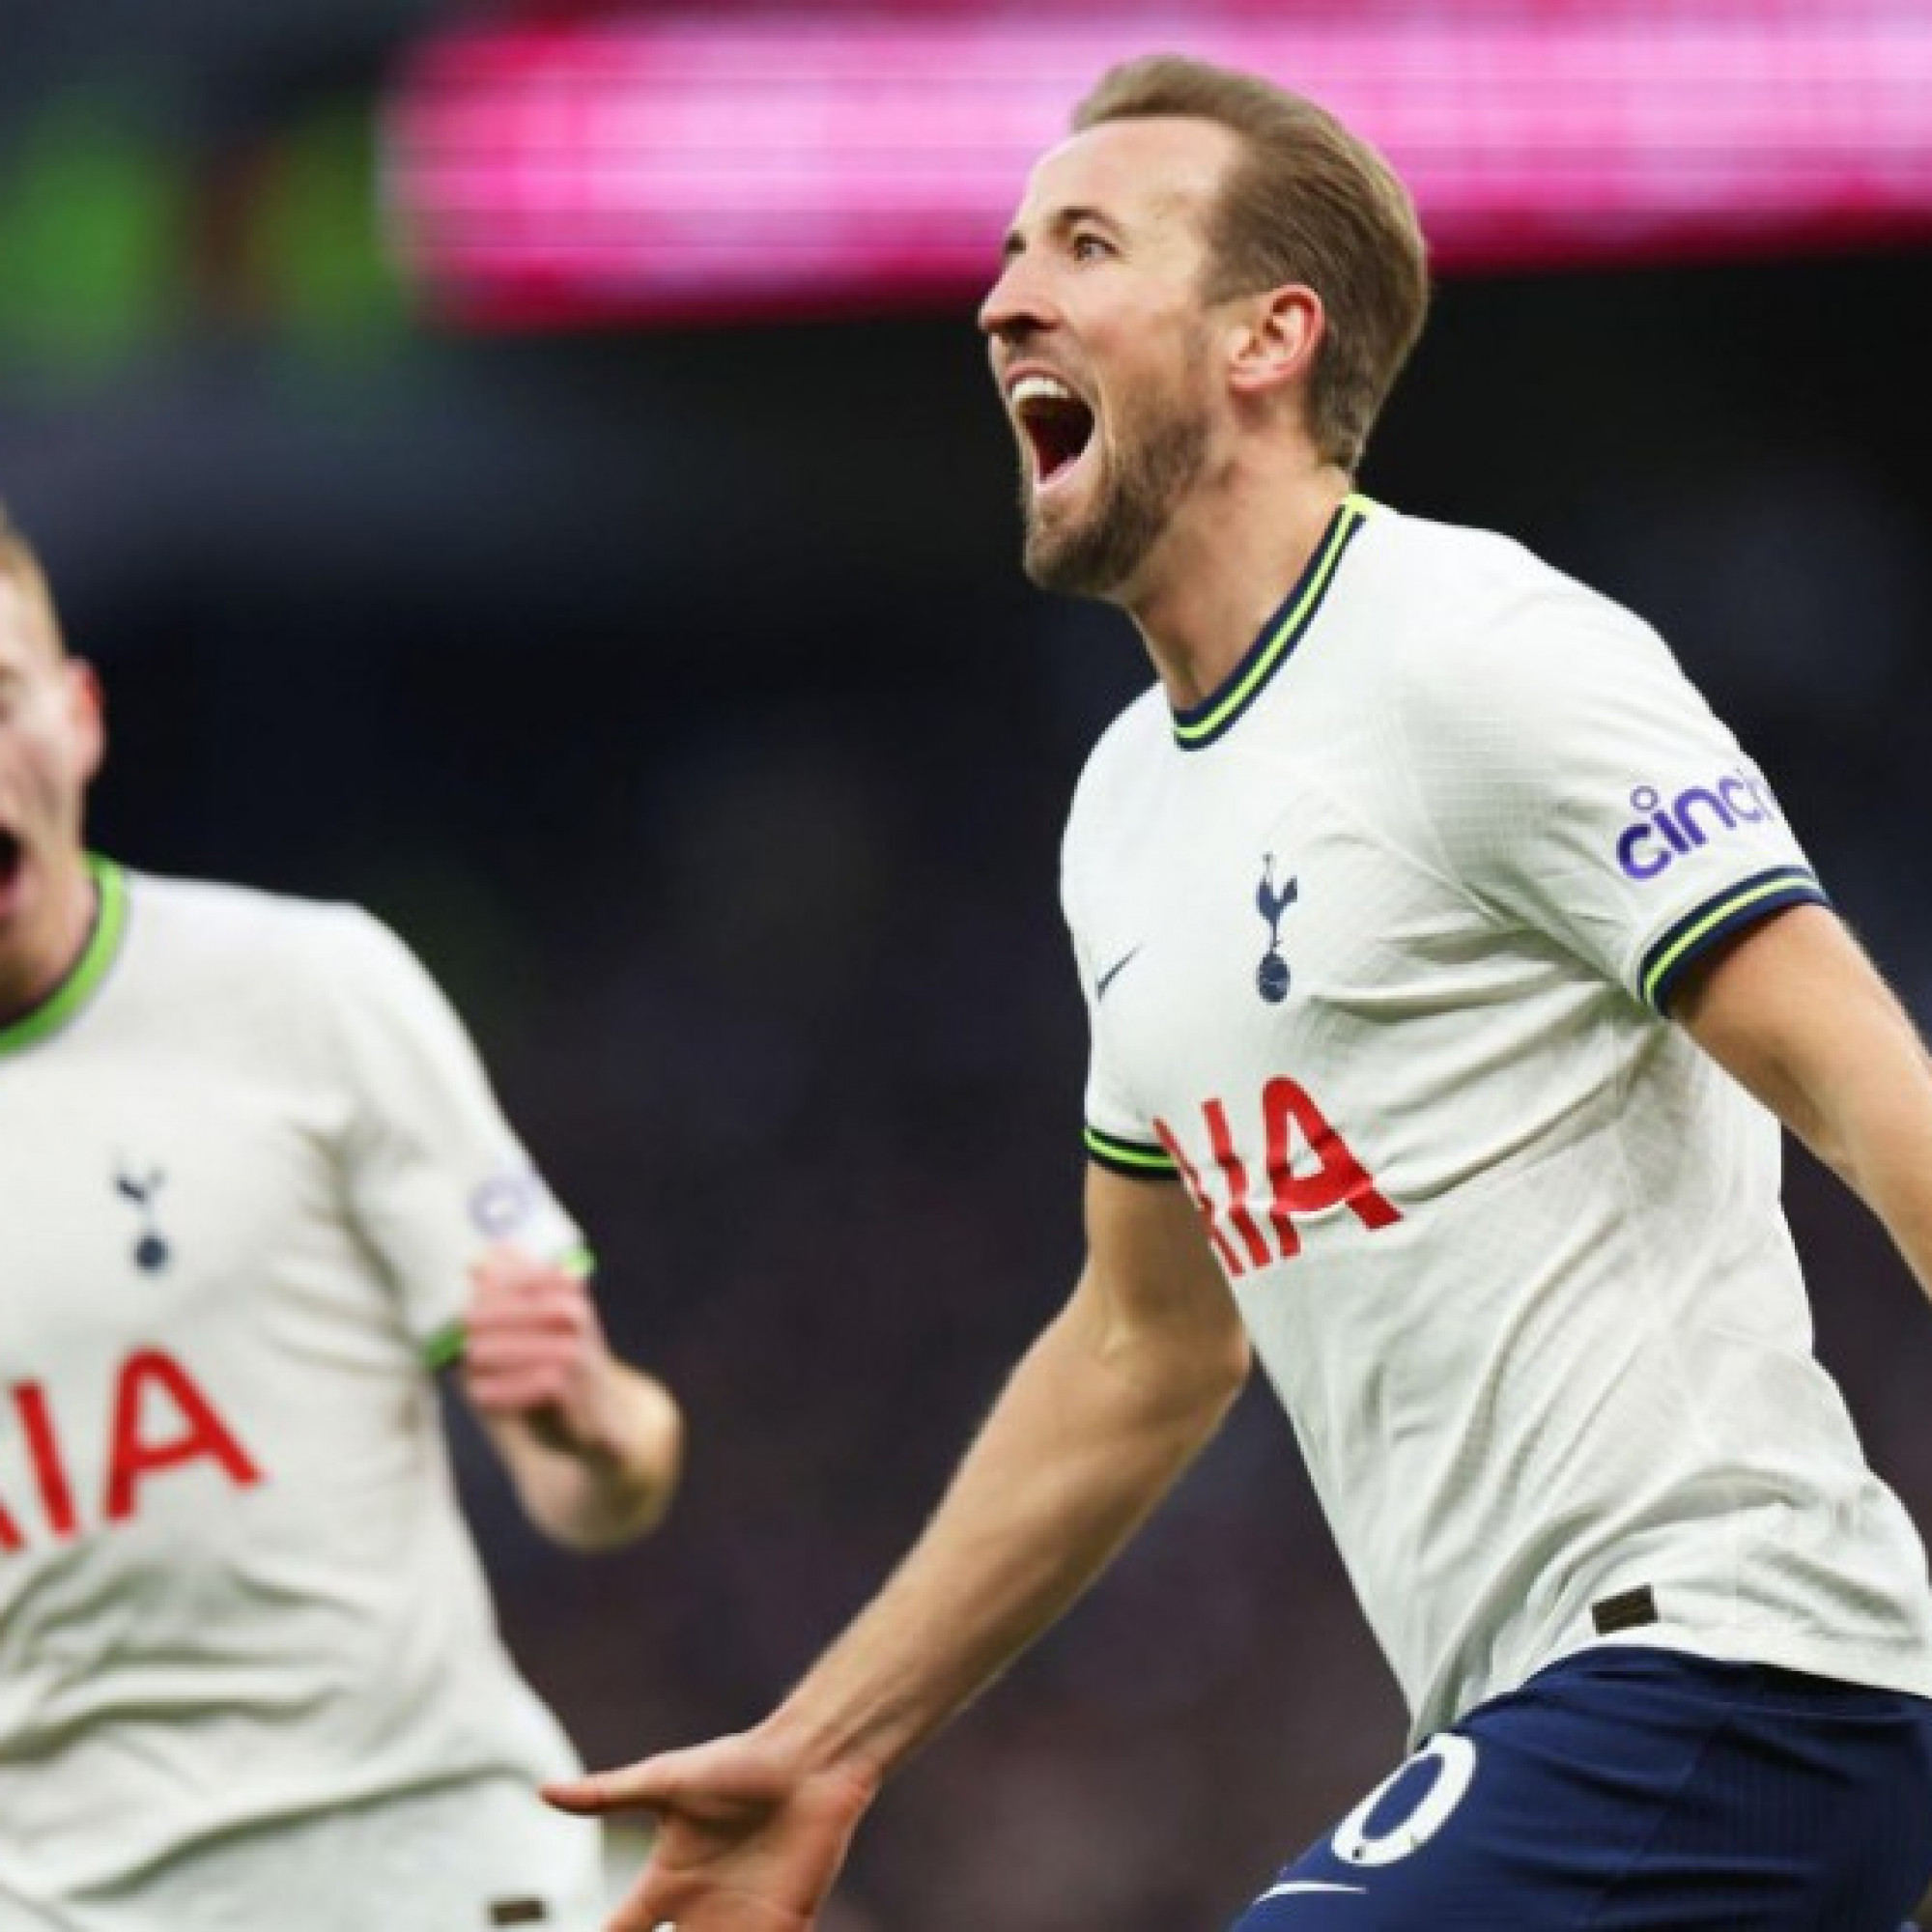  - Tường thuật bóng đá Tottenham - Man City: Harry Kane mở tỷ số (Ngoại hạng Anh)